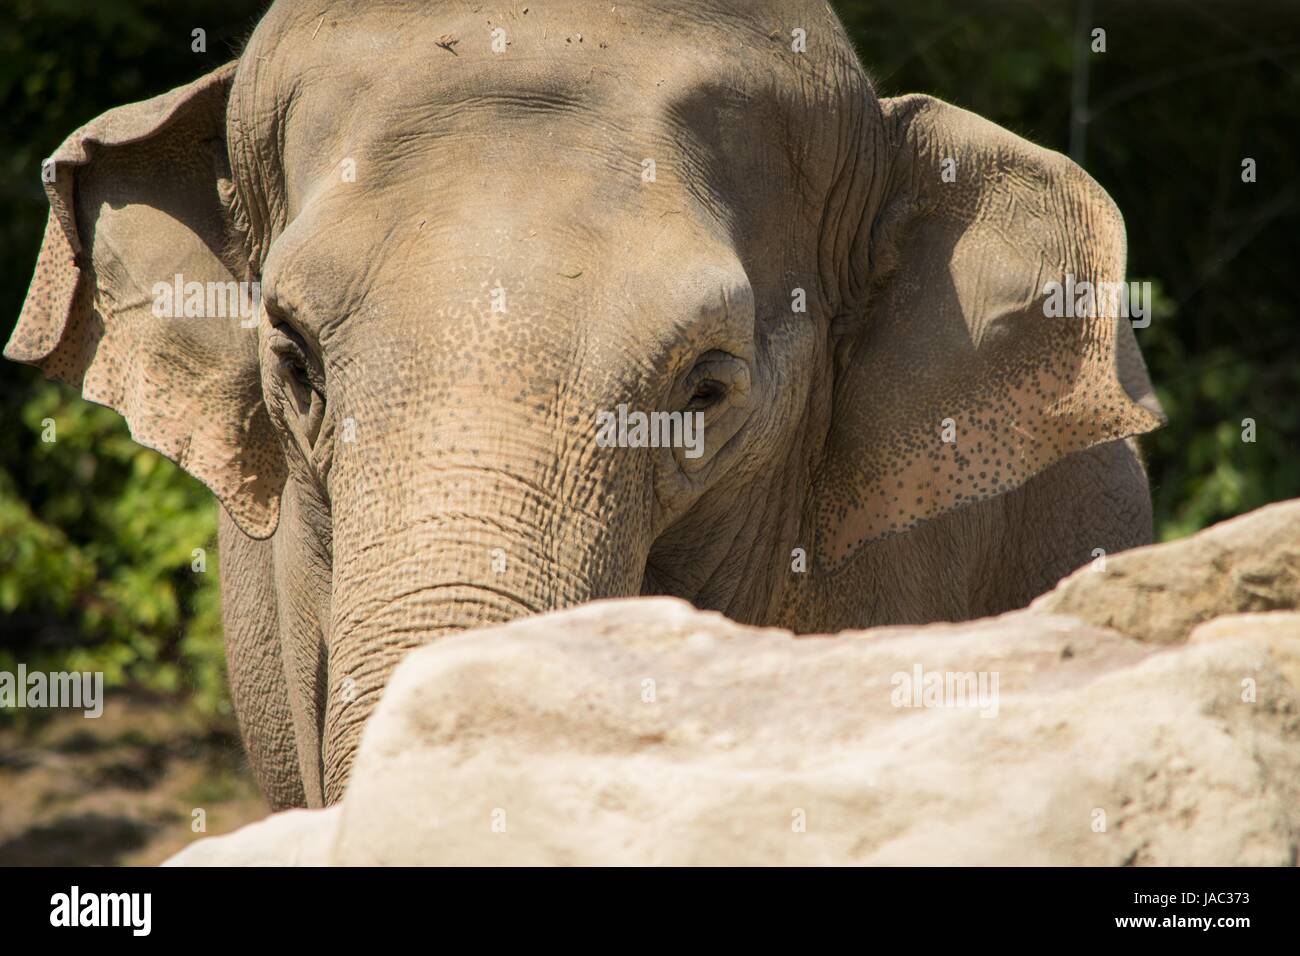 close-up of elephant Stock Photo